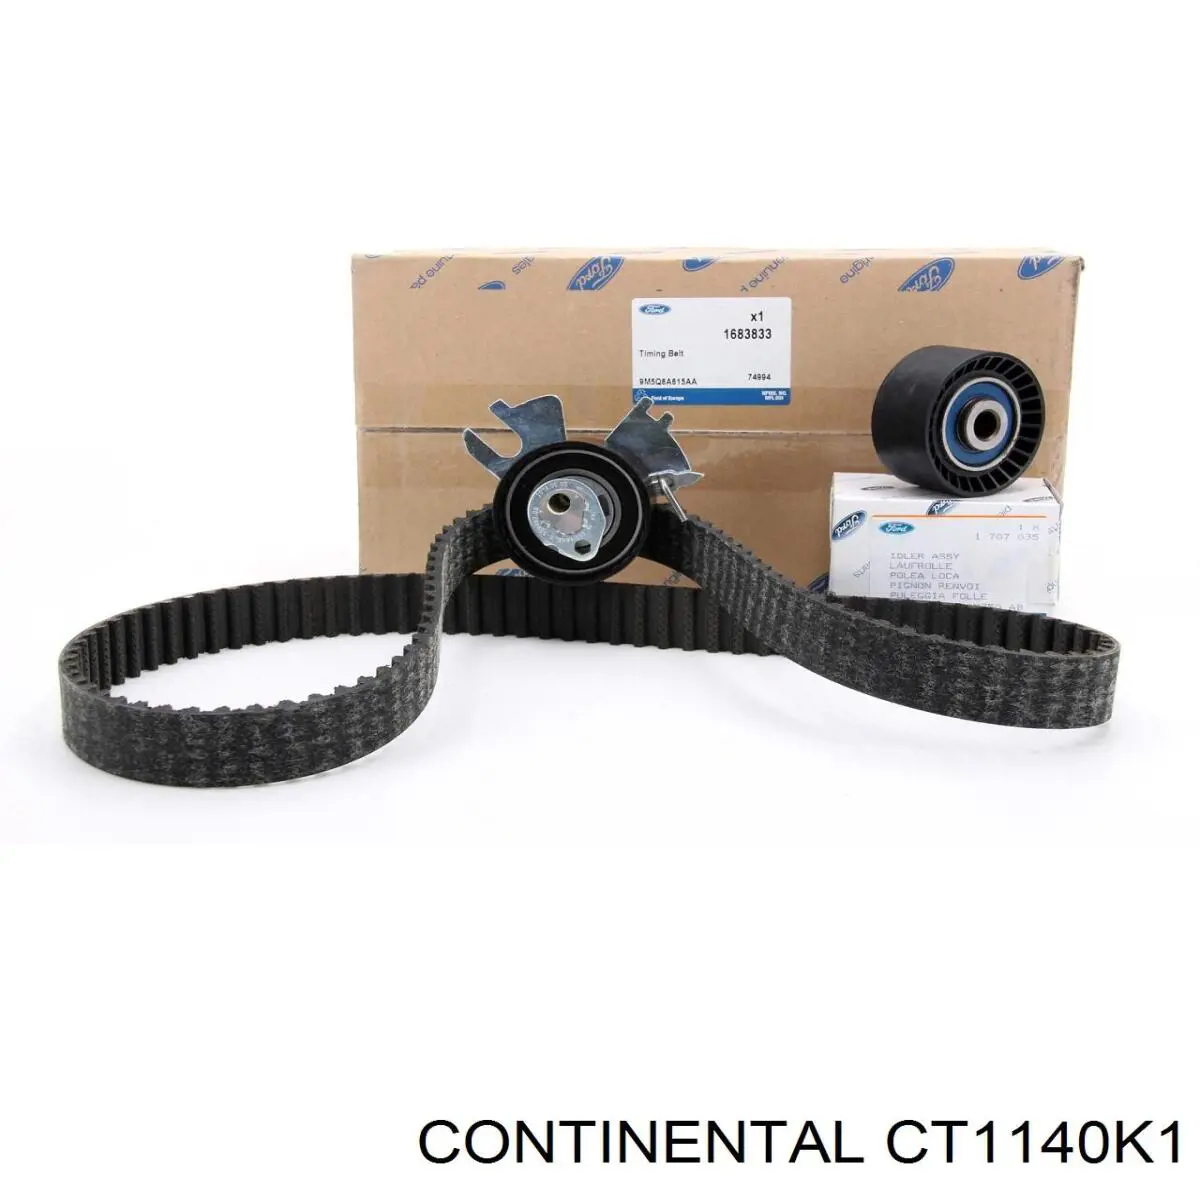 CT1140K1 Continental/Siemens kit de distribución